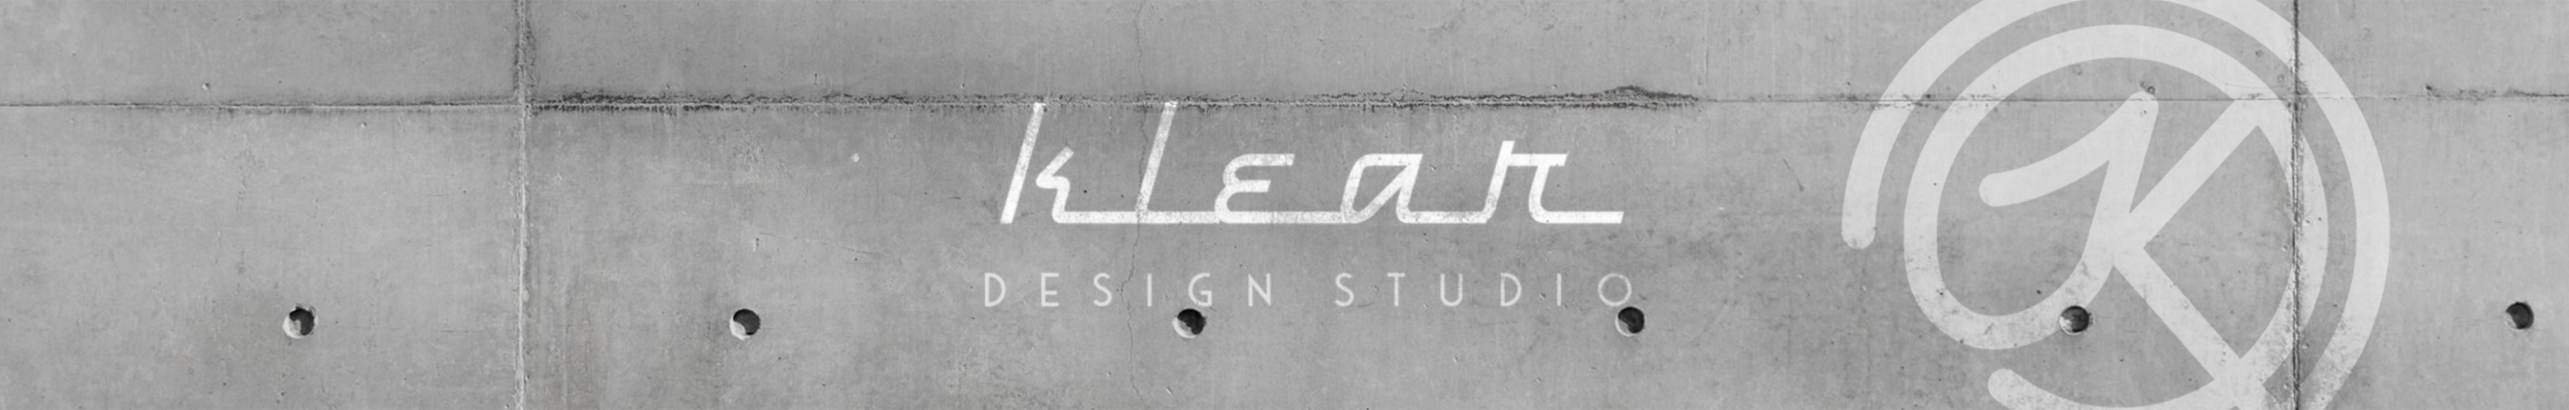 Klear Design Studio's profile banner